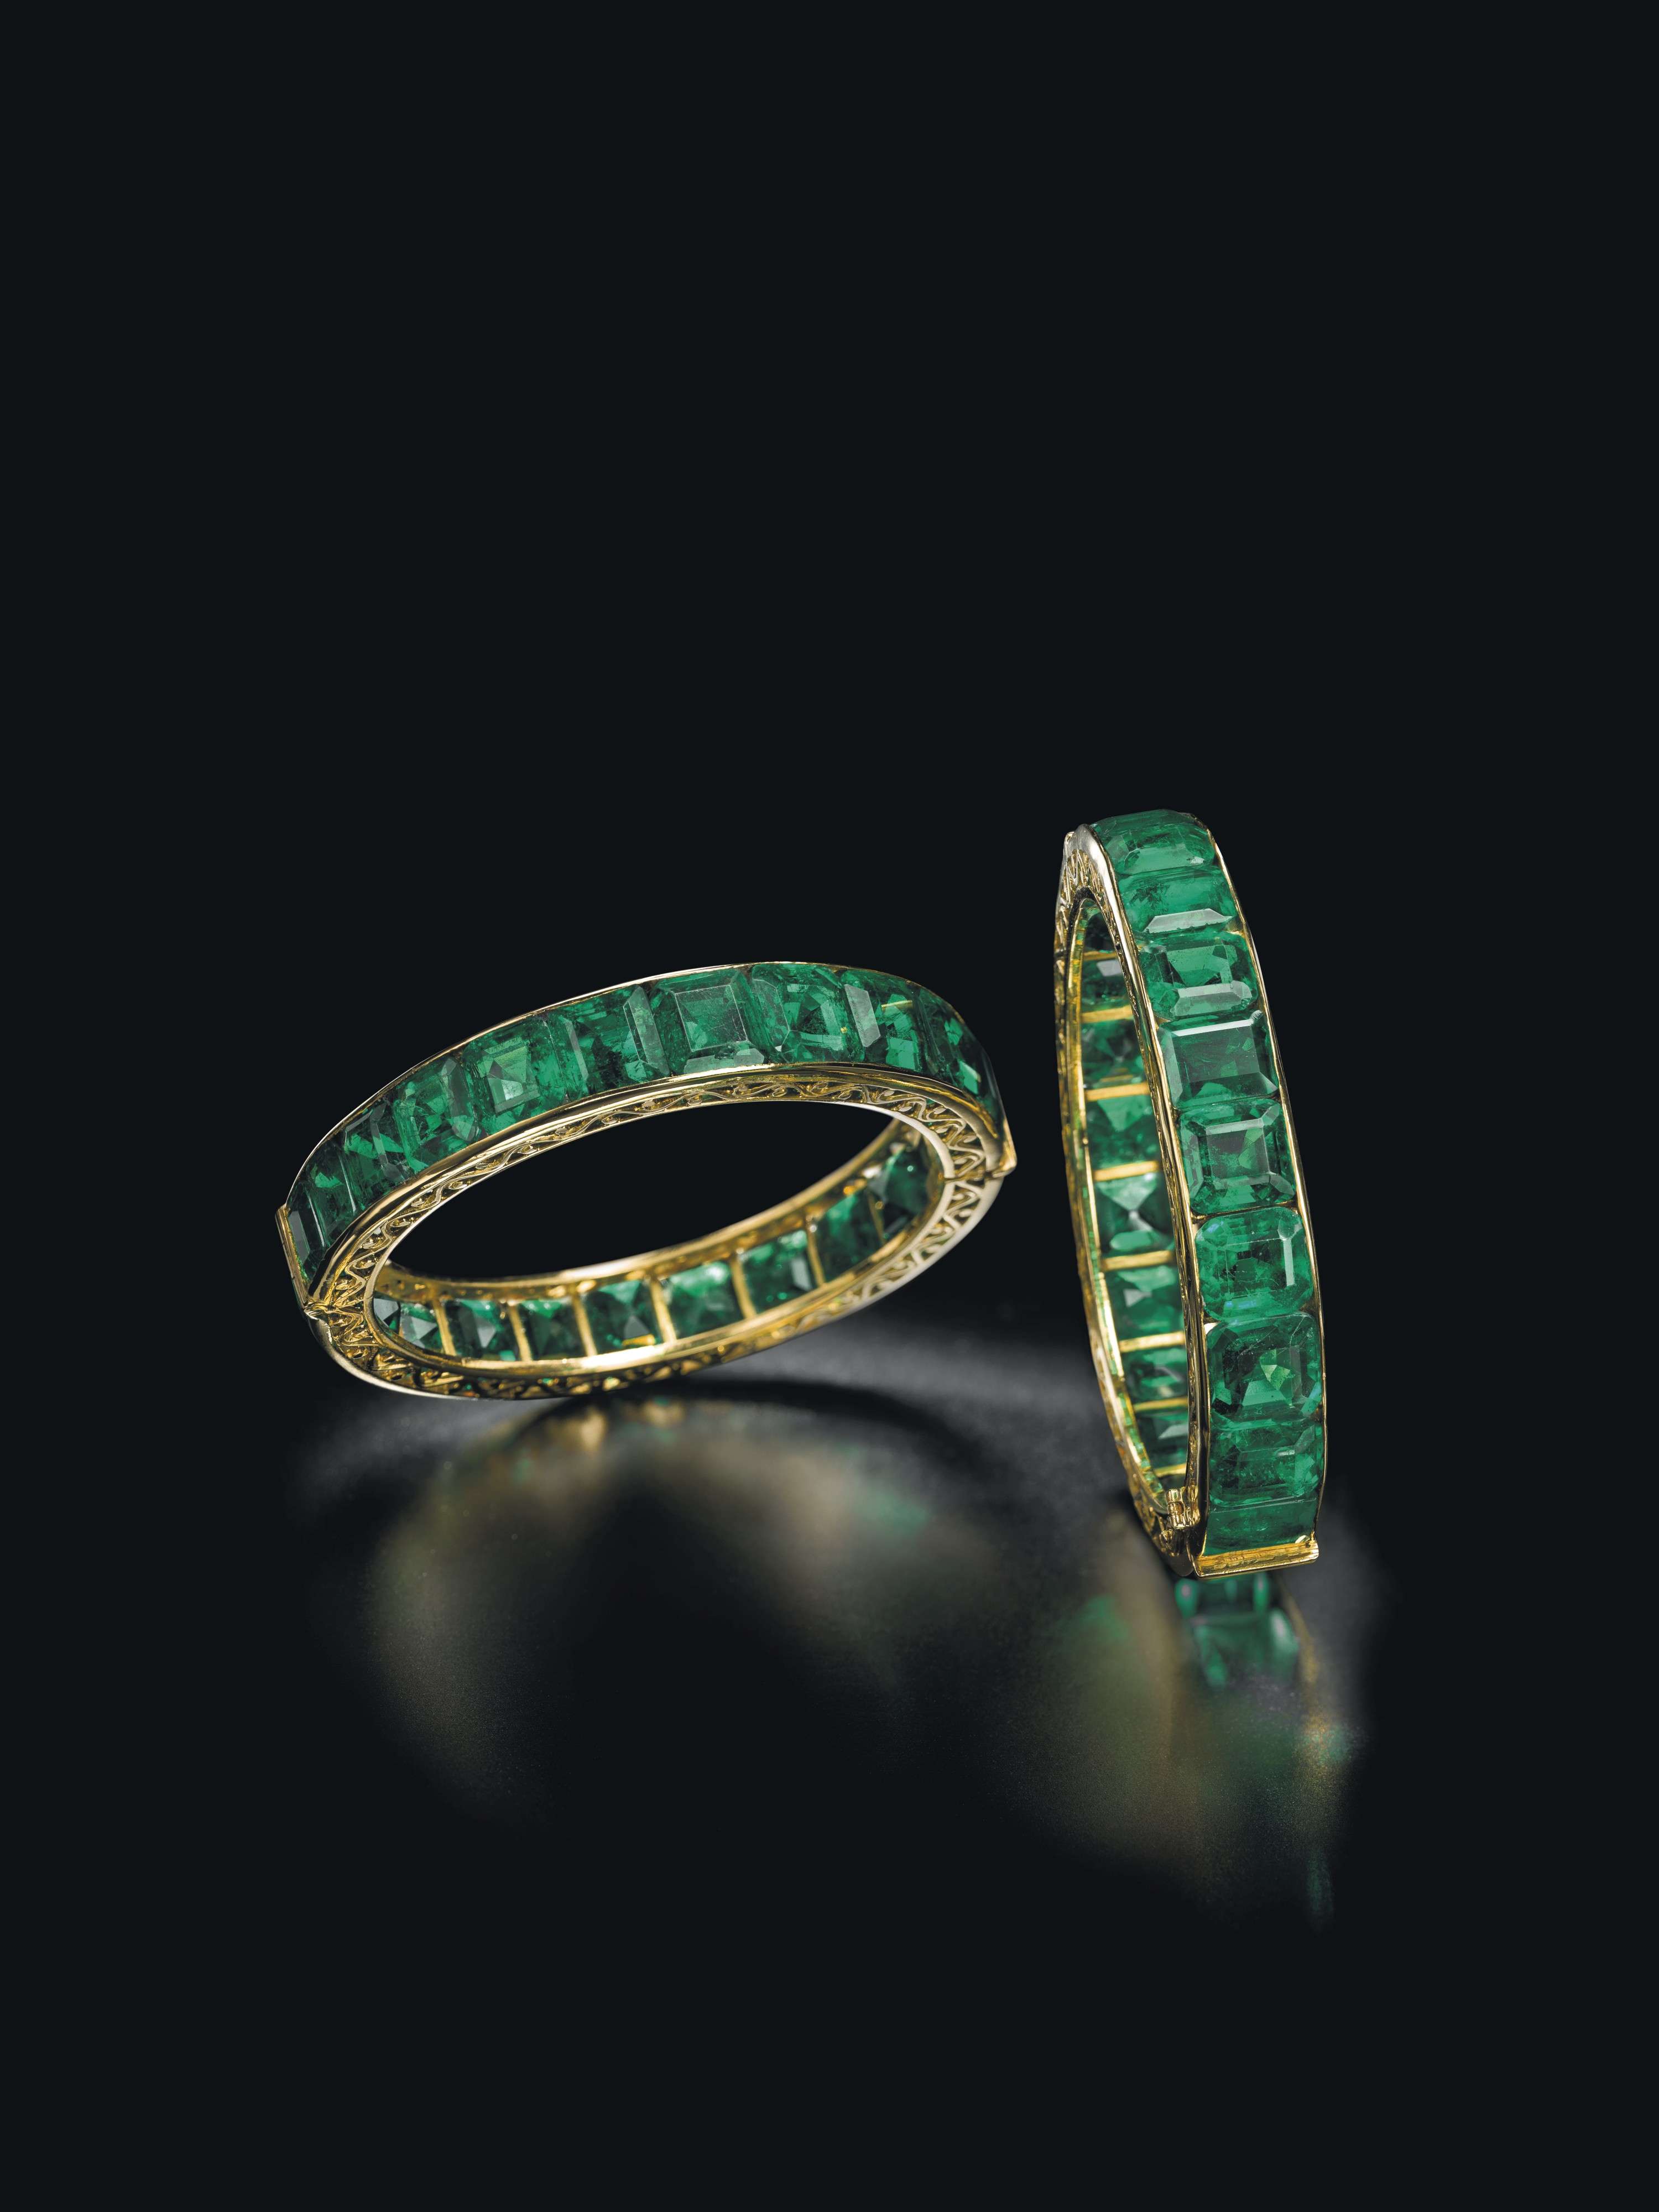 Emeralds Uma Nair blog